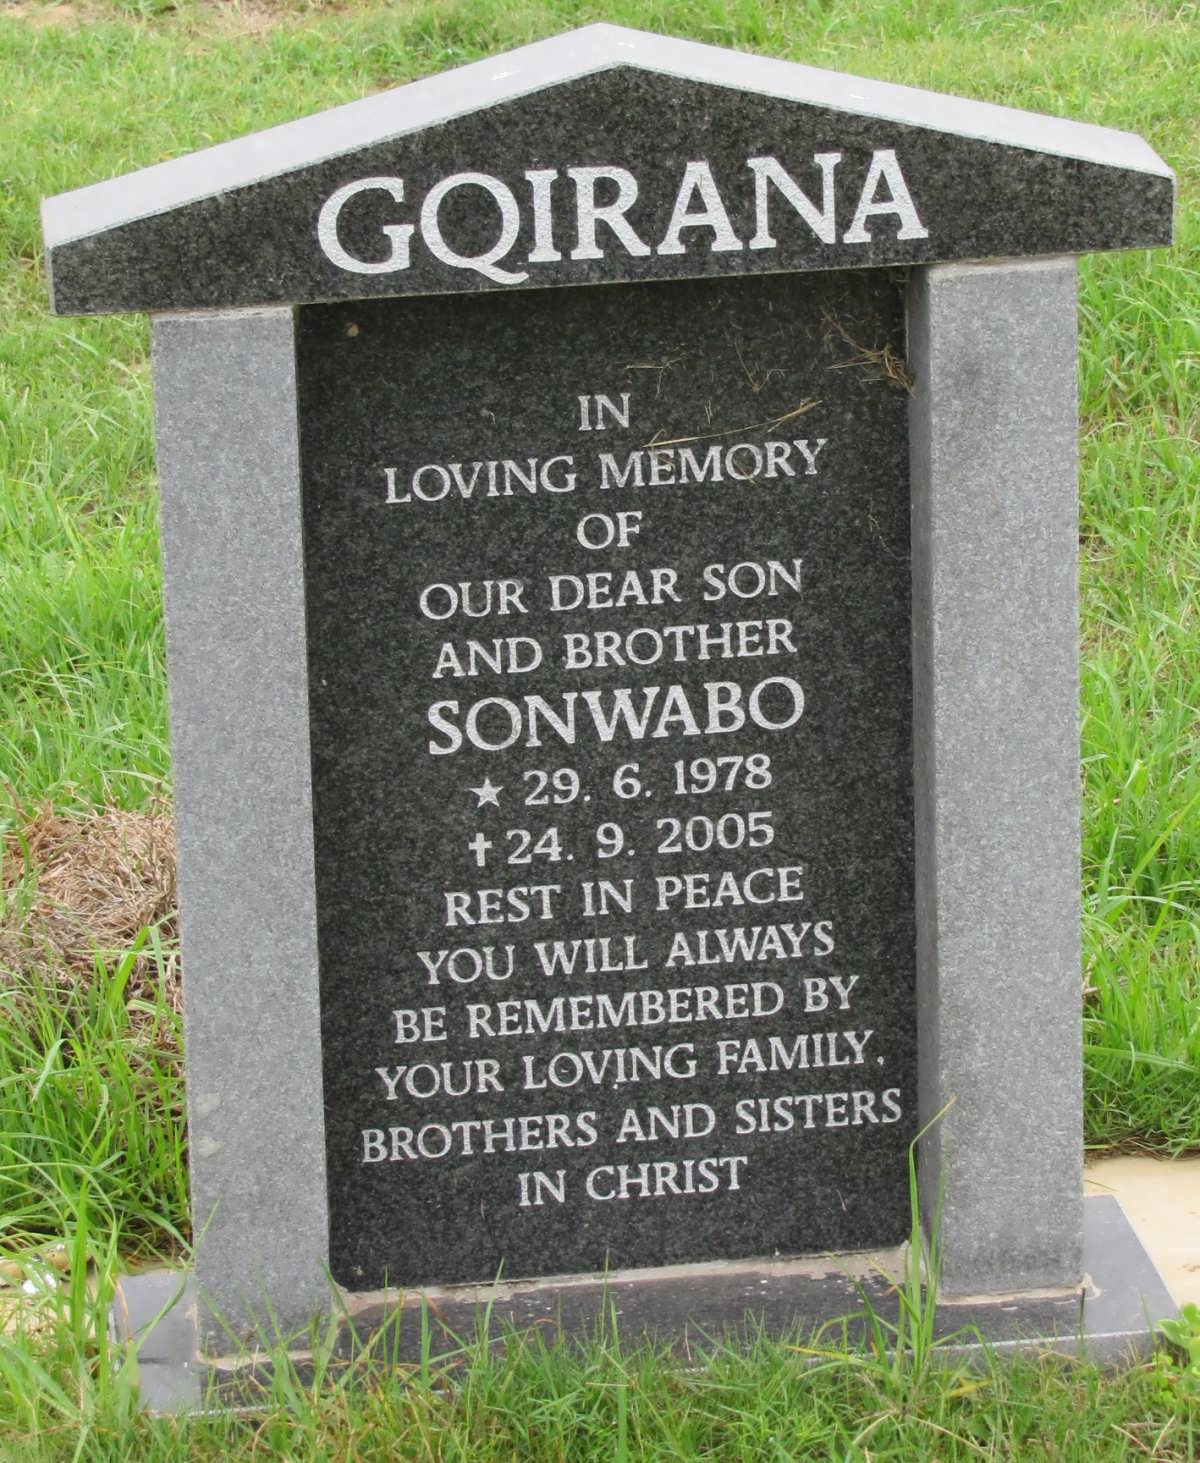 GQIRANA Sonwabo 1978-2005